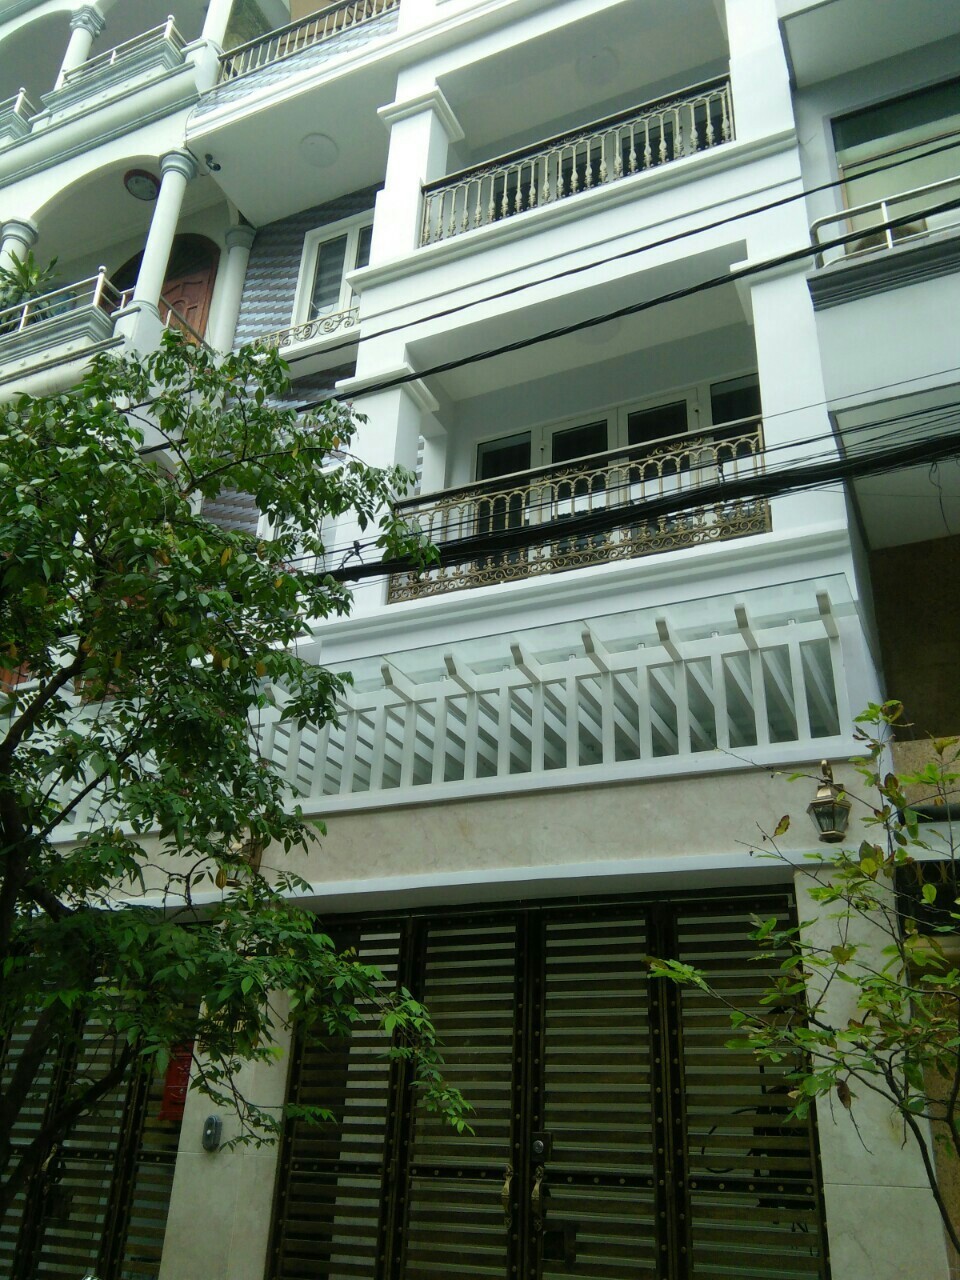  Bán nhà mặt phố Nguyễn Văn Cừ, P. 2, Q. 5, DT: 3.05 x 20.45m, 5T, 25 tỷ